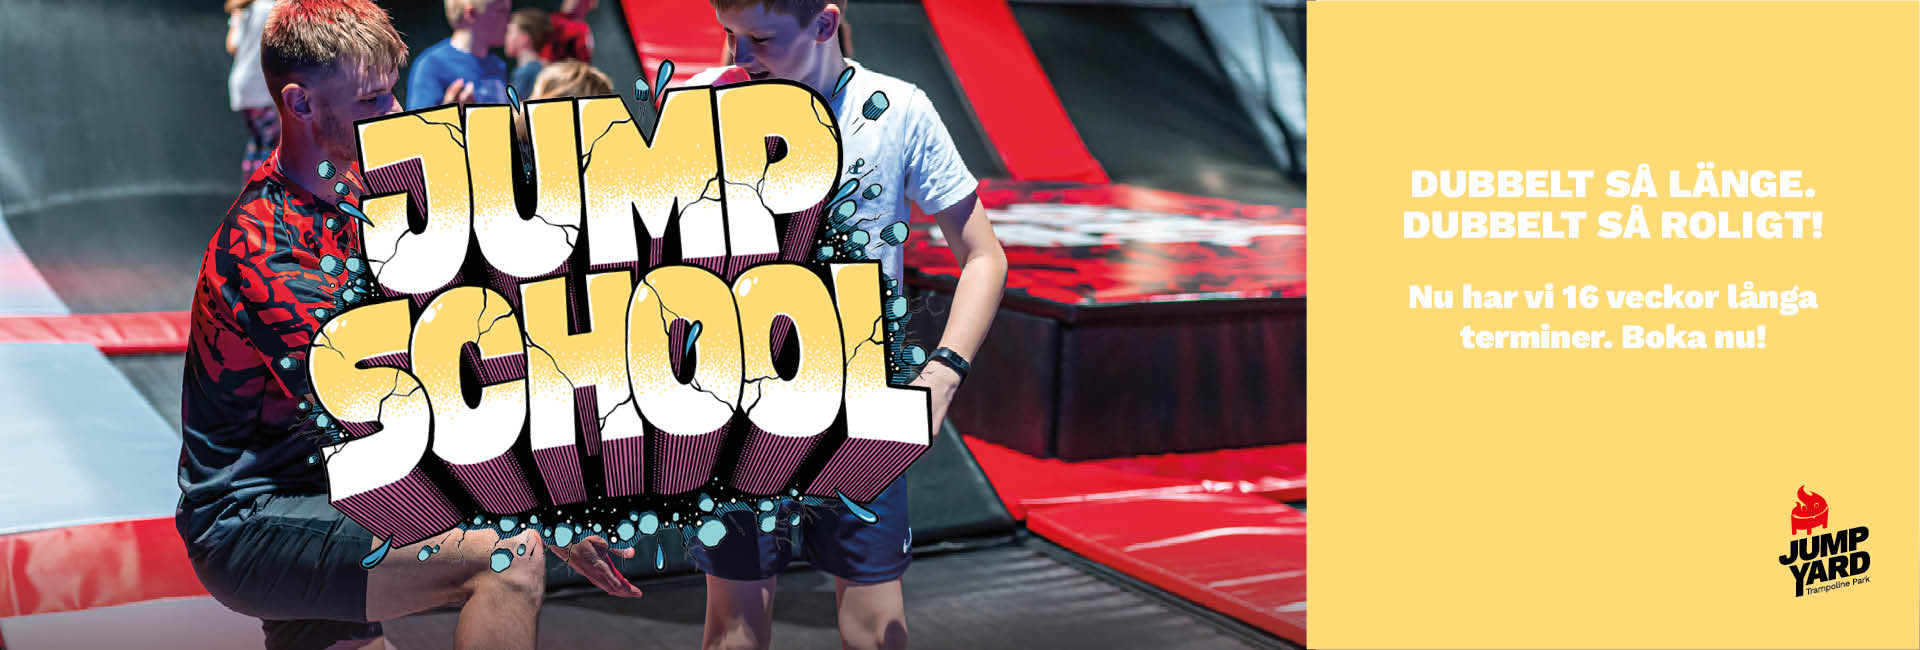 16 veckor aktiviteter i Åre på JumpSchool trampolinkurser hos JumpYard